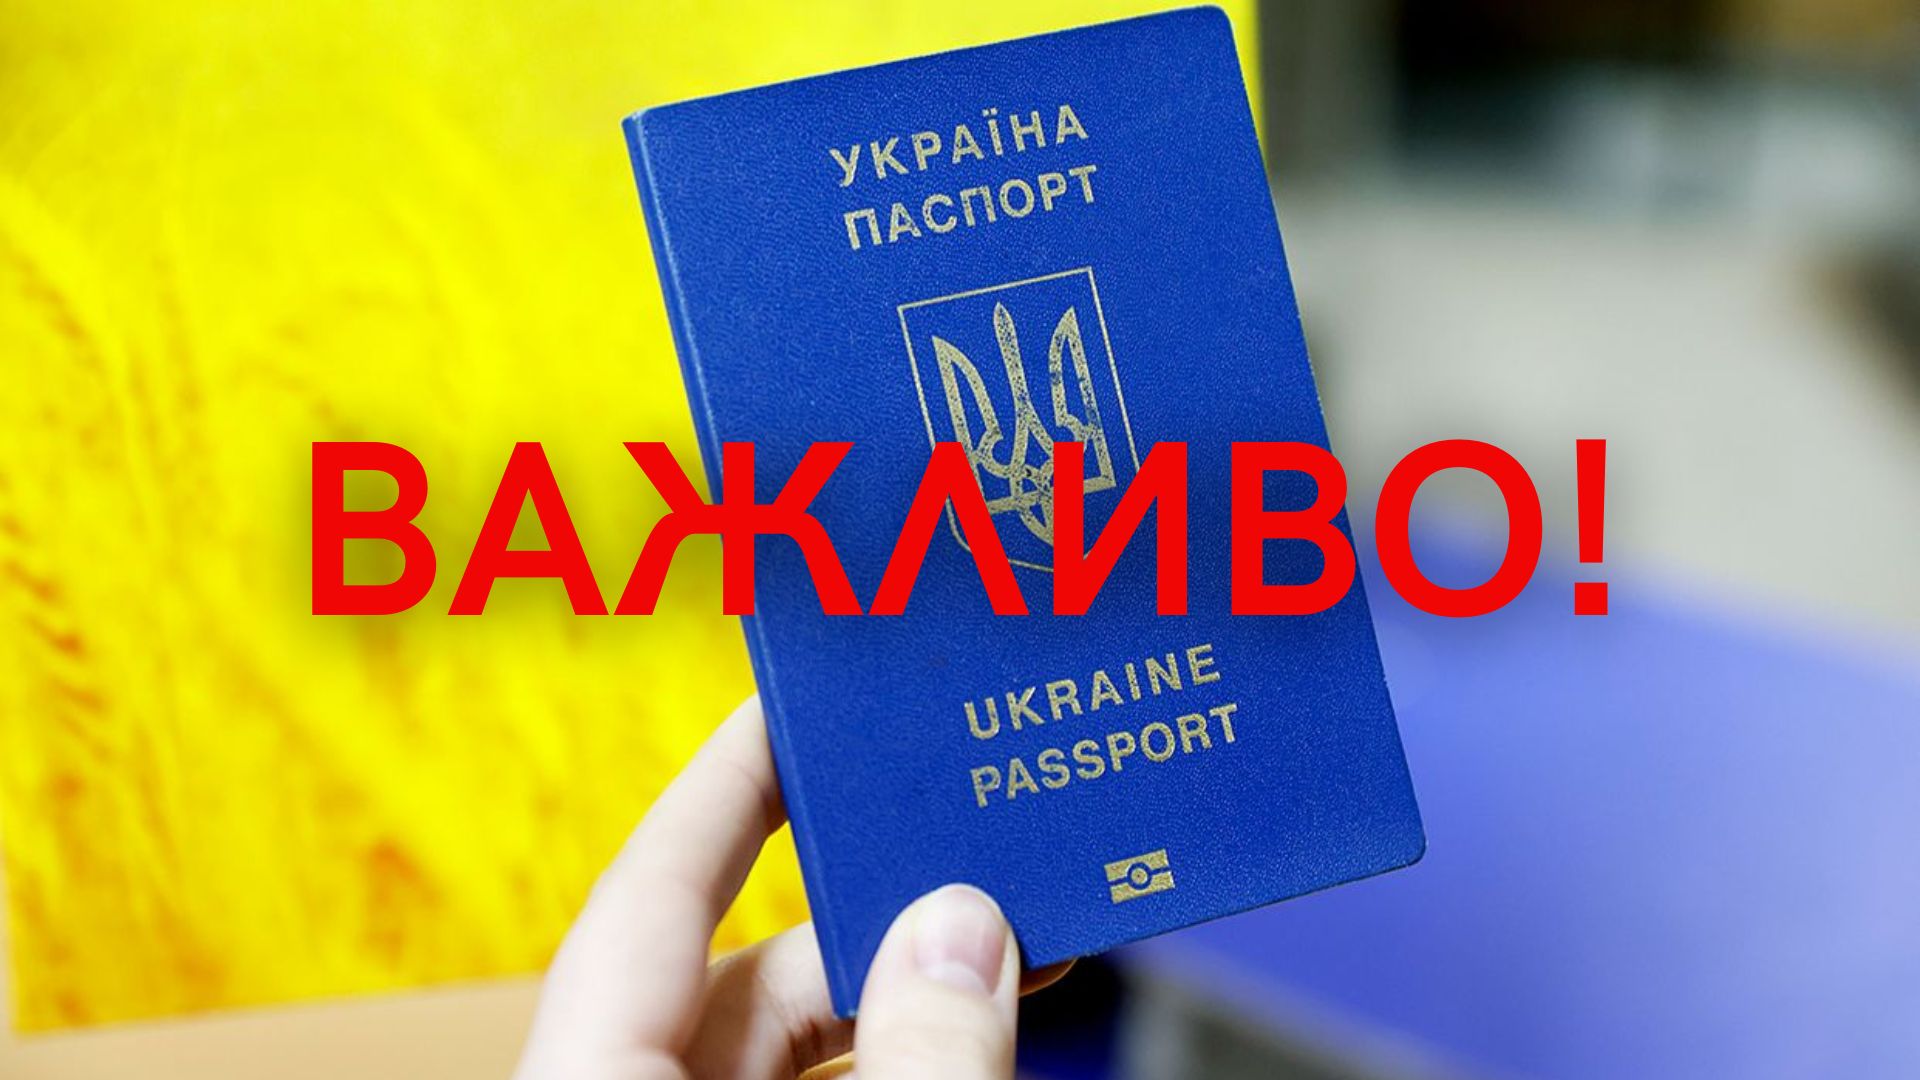 Частина закордонних паспортів в Україні можуть стати недійсними.